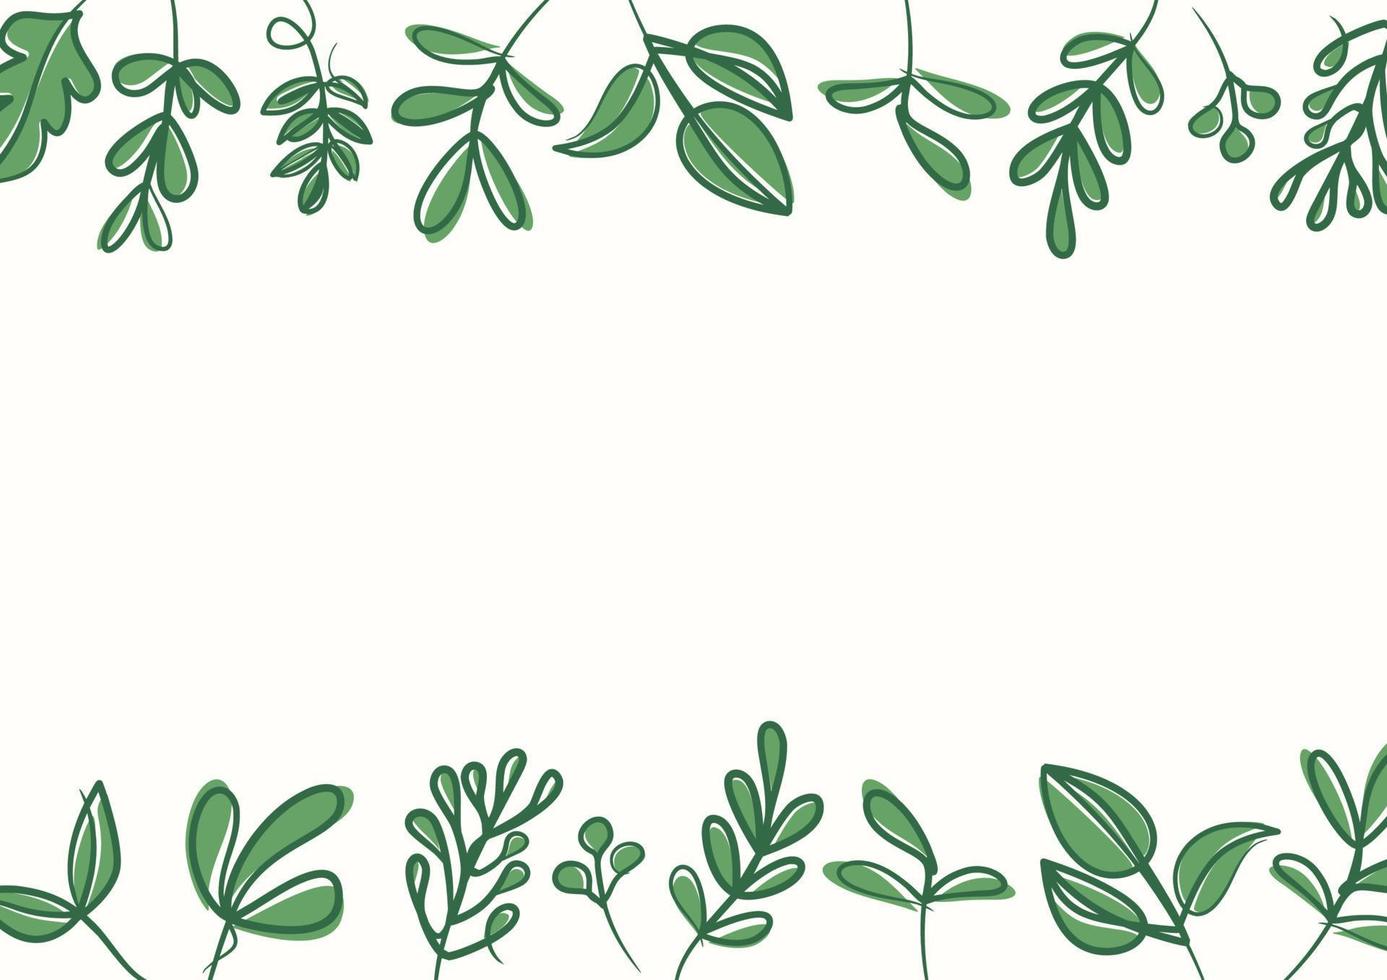 botanischer grüner blumenblatthintergrund mit kopienraum für text vektor